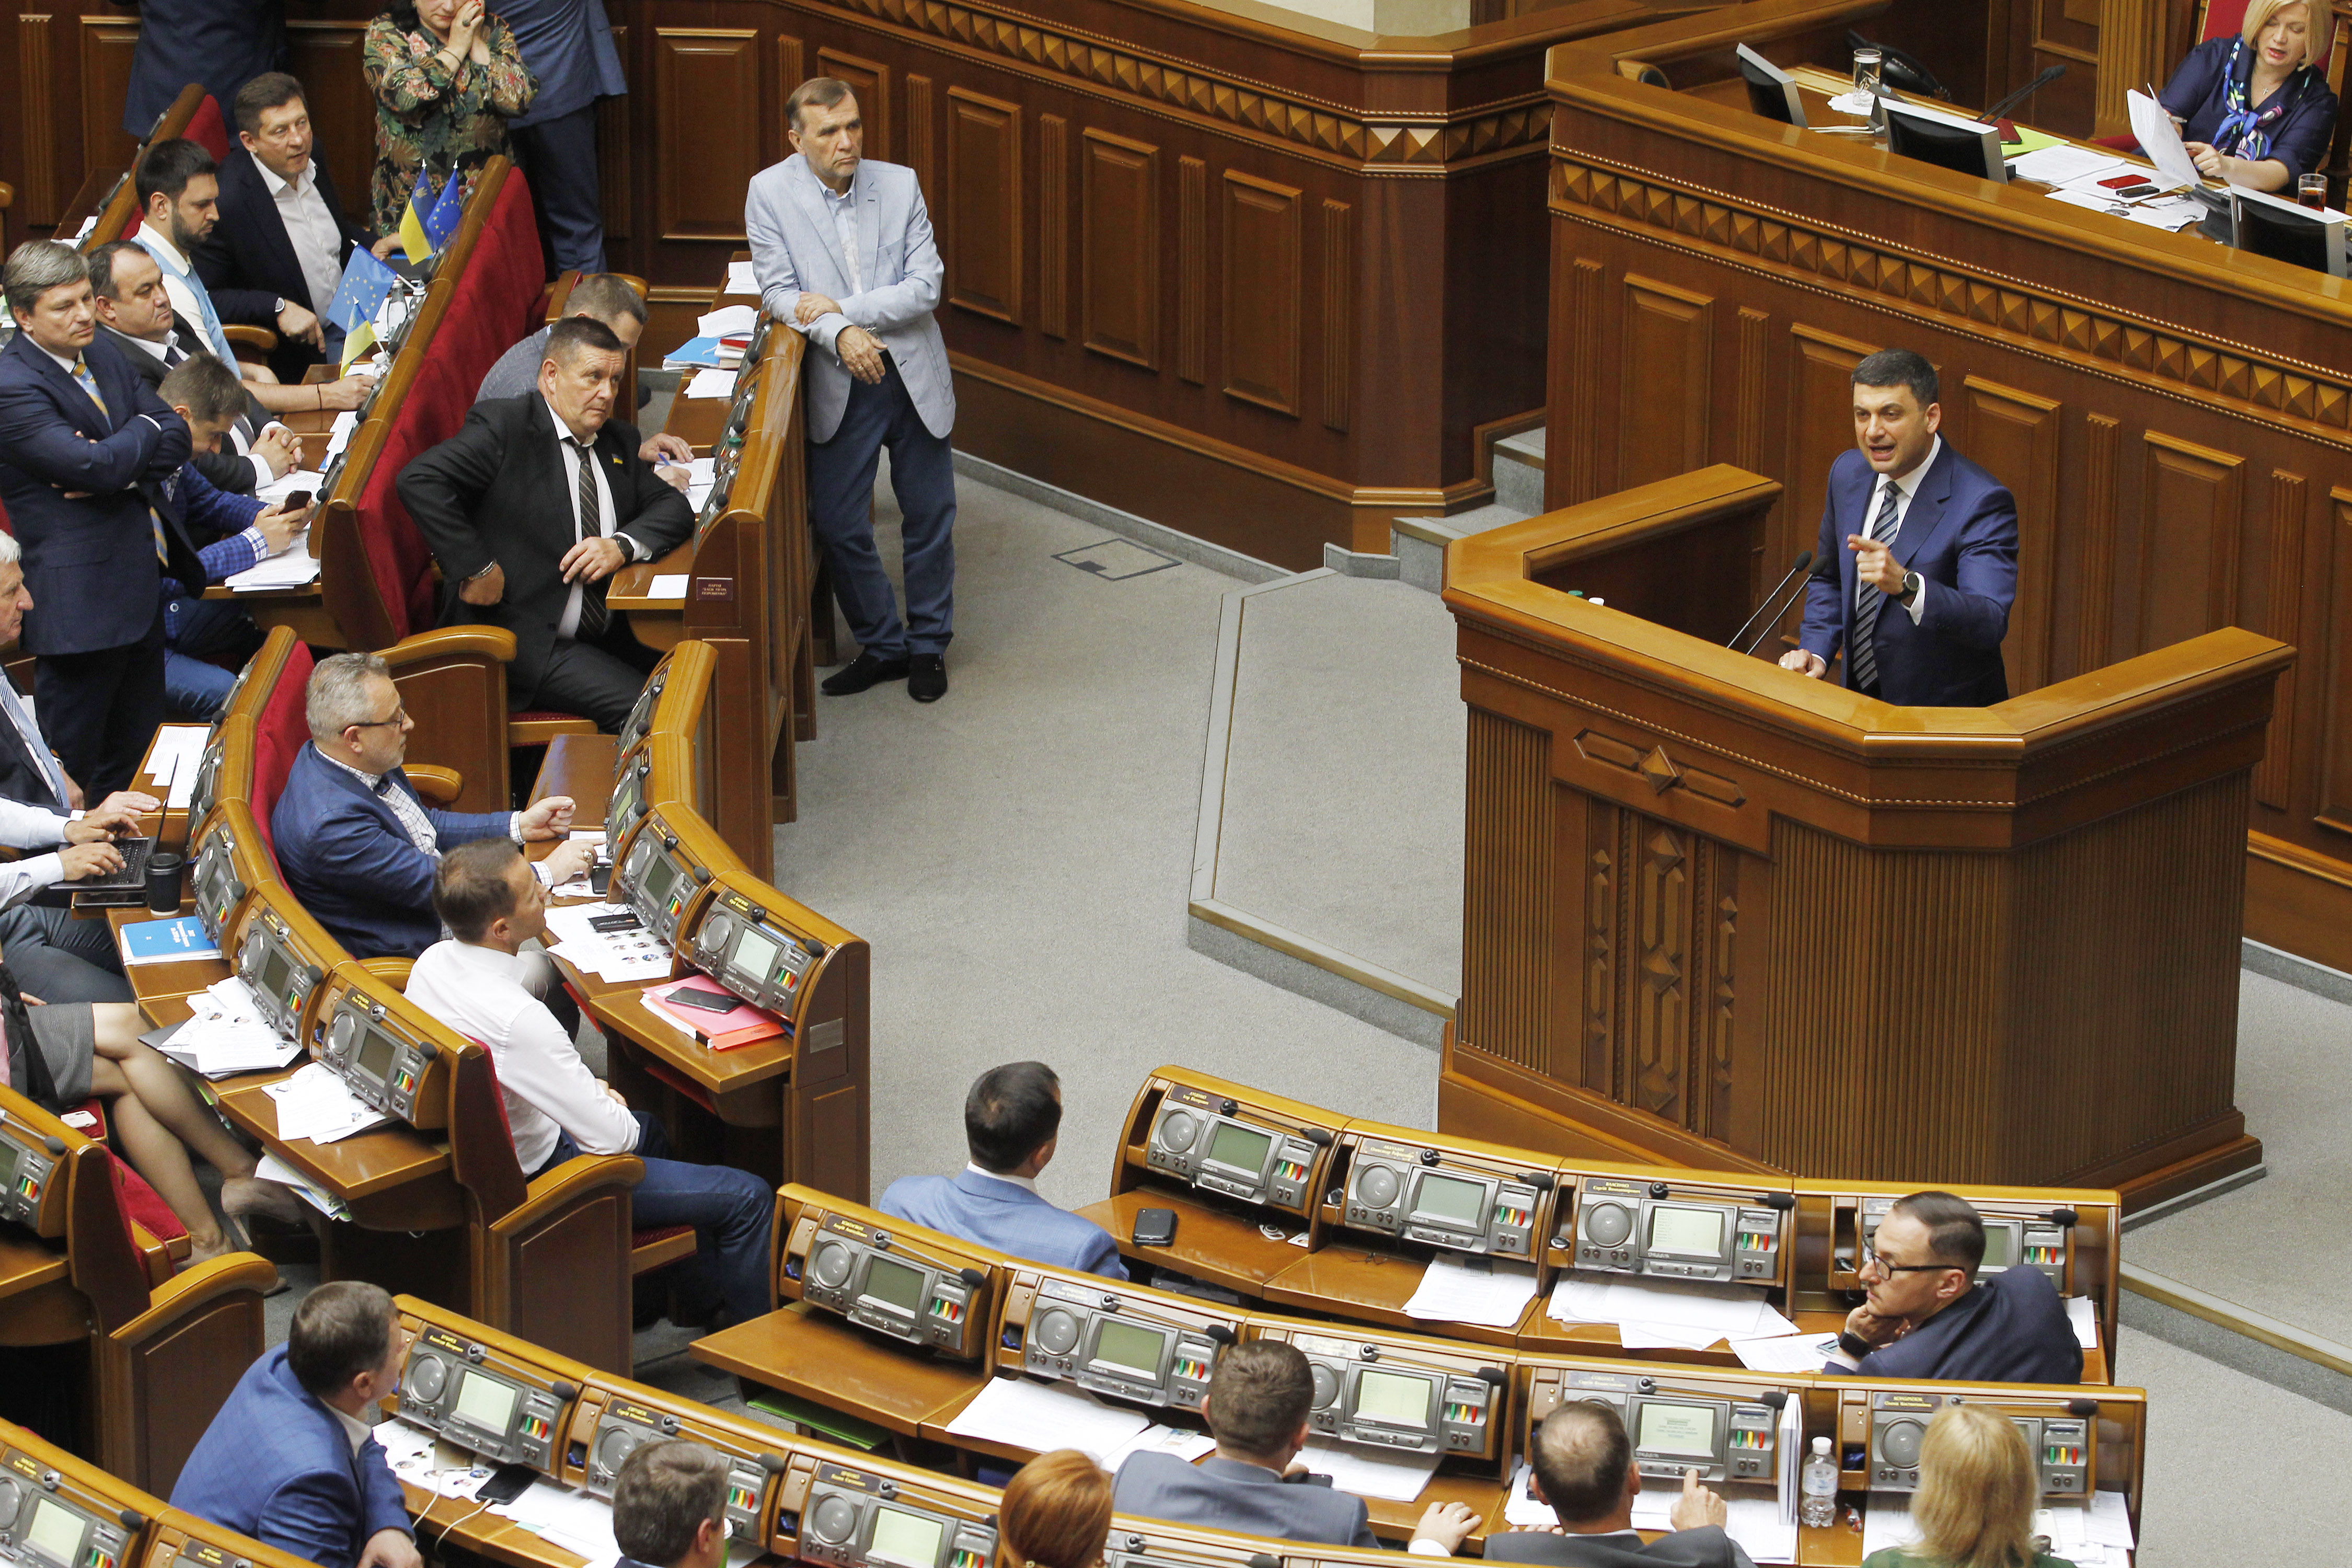 Az ukrán parlament jóváhagyta a kiskorúak ellen szexuális bűncselekményt elkövetők kémiai kényszerkasztrálását